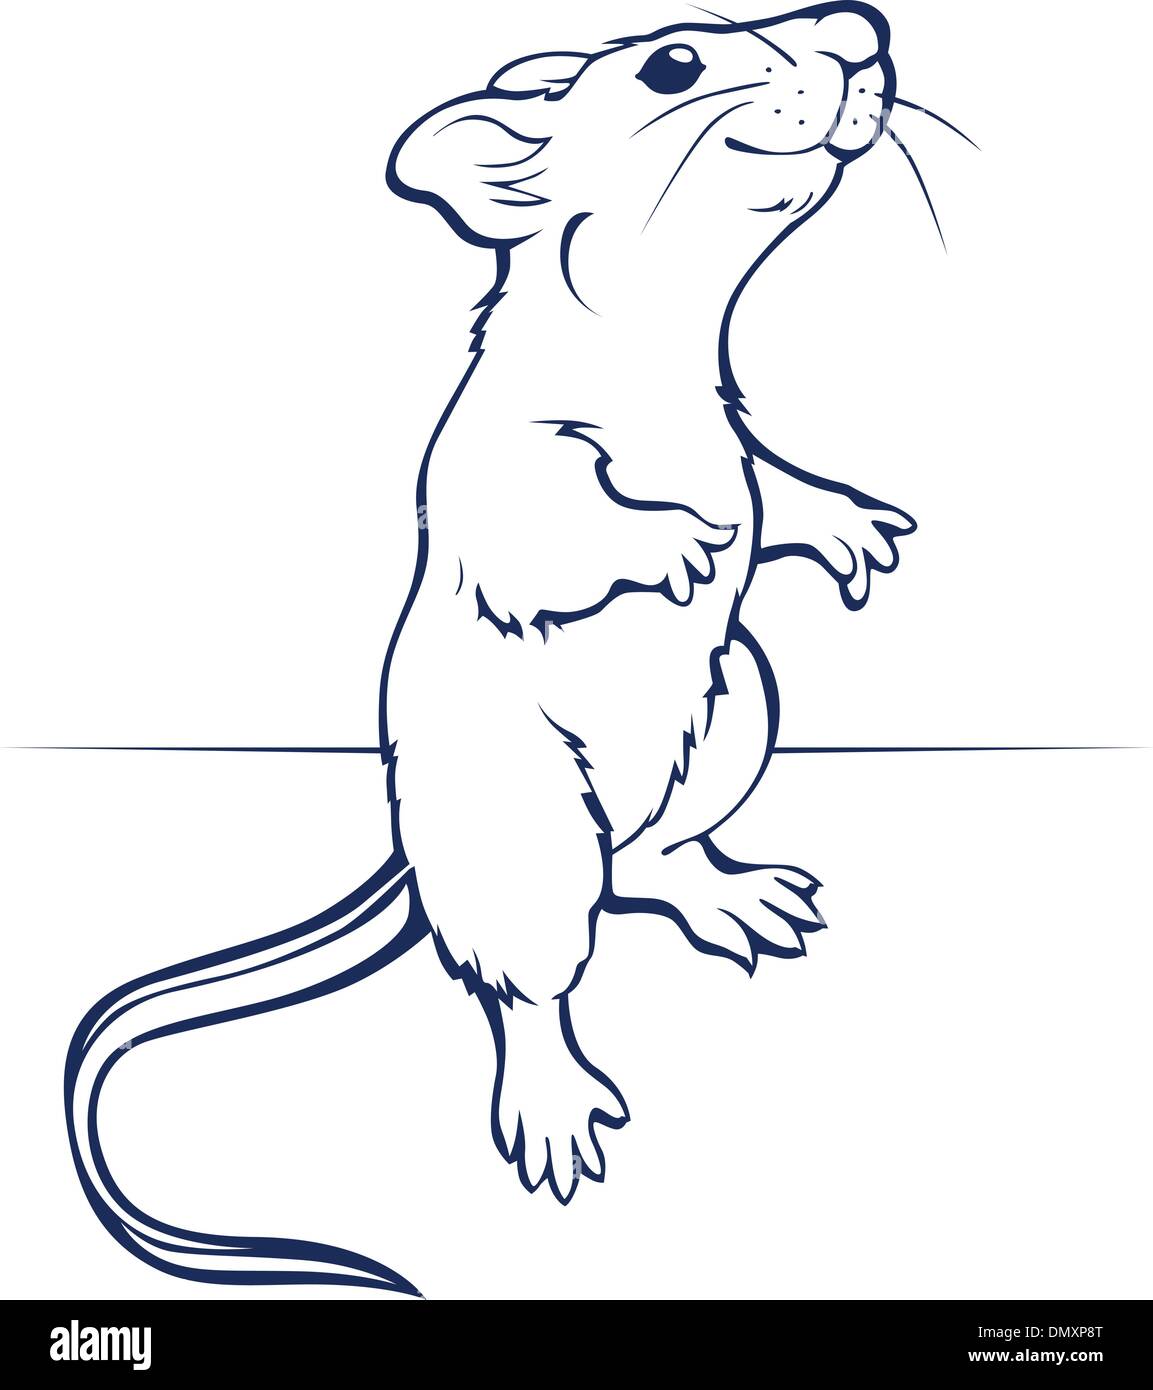 Мышь на задних лапах рисунок